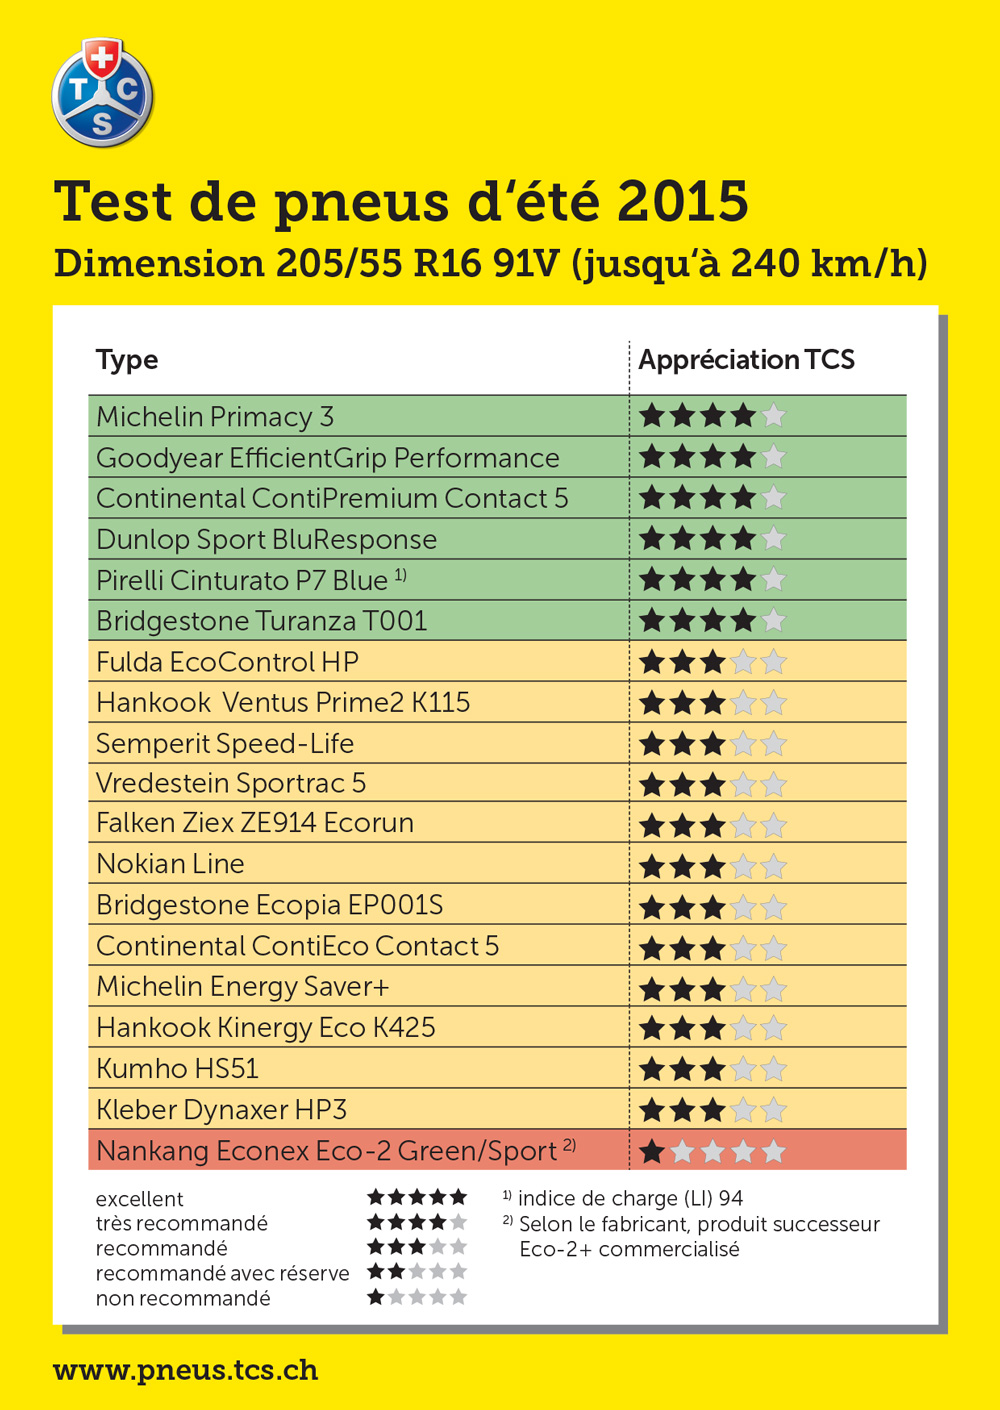 Test des pneus été 2015 de dimension 205/55 R16 91V